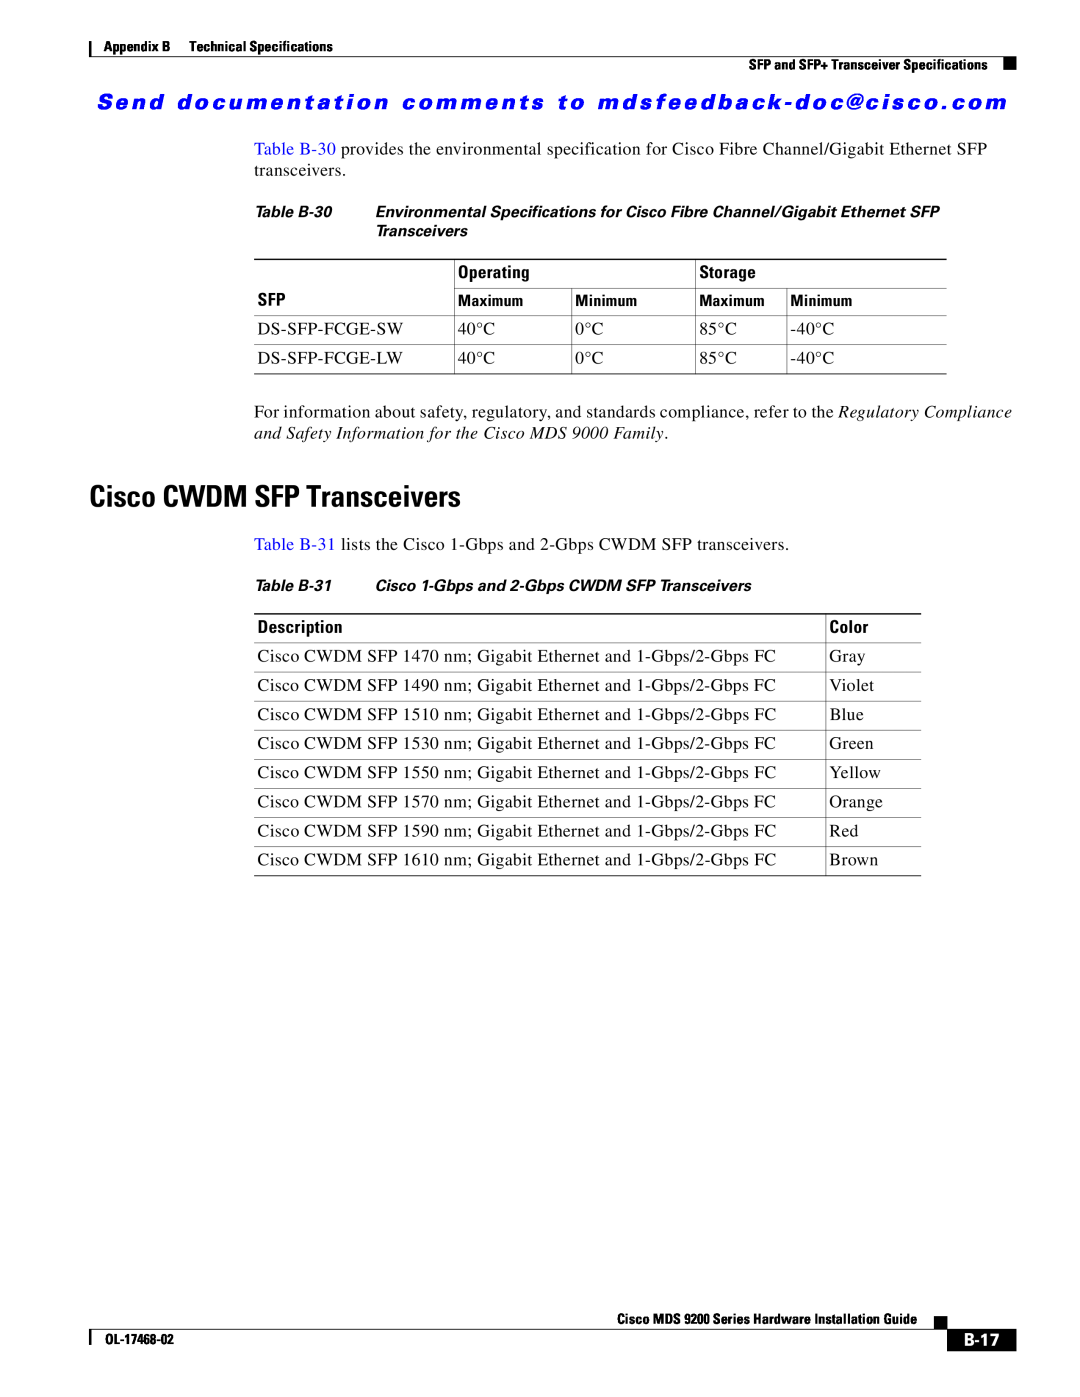 Cisco Systems MDS 9200 Series manual Cisco CWDM SFP Transceivers, B-17 